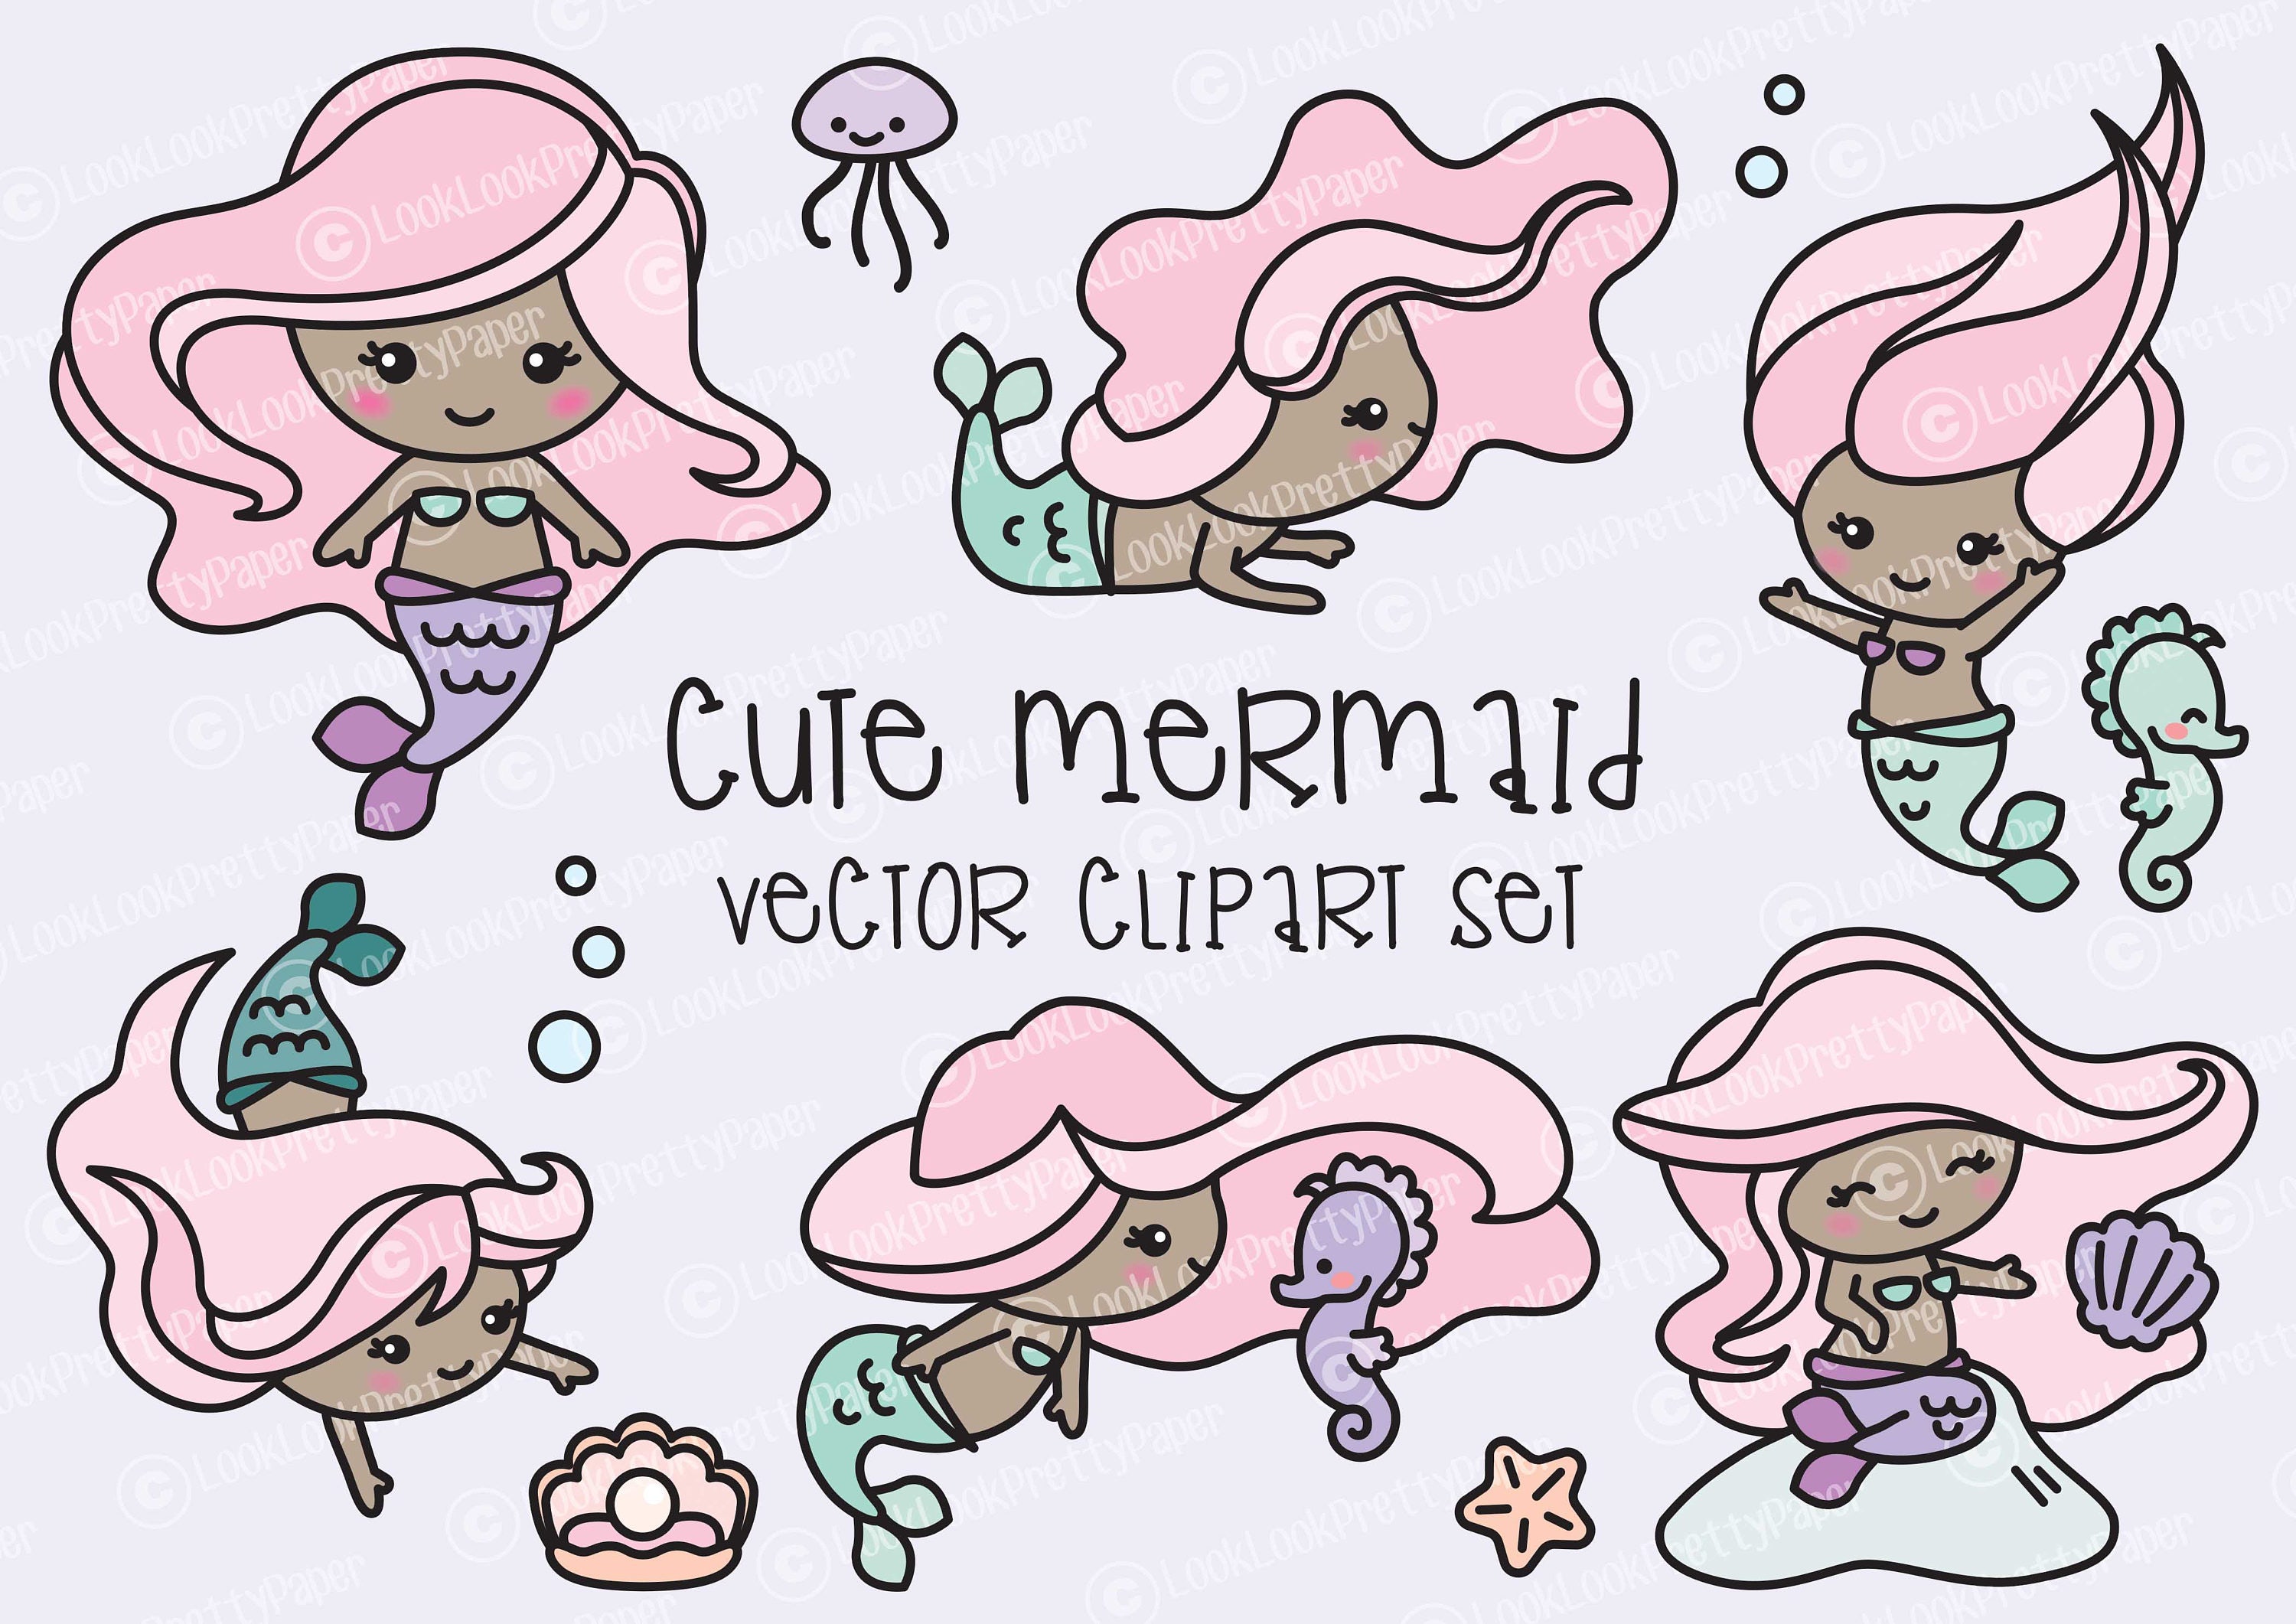 Download Premium Vector Clipart Kawaii Mermaids Cute Mermaids